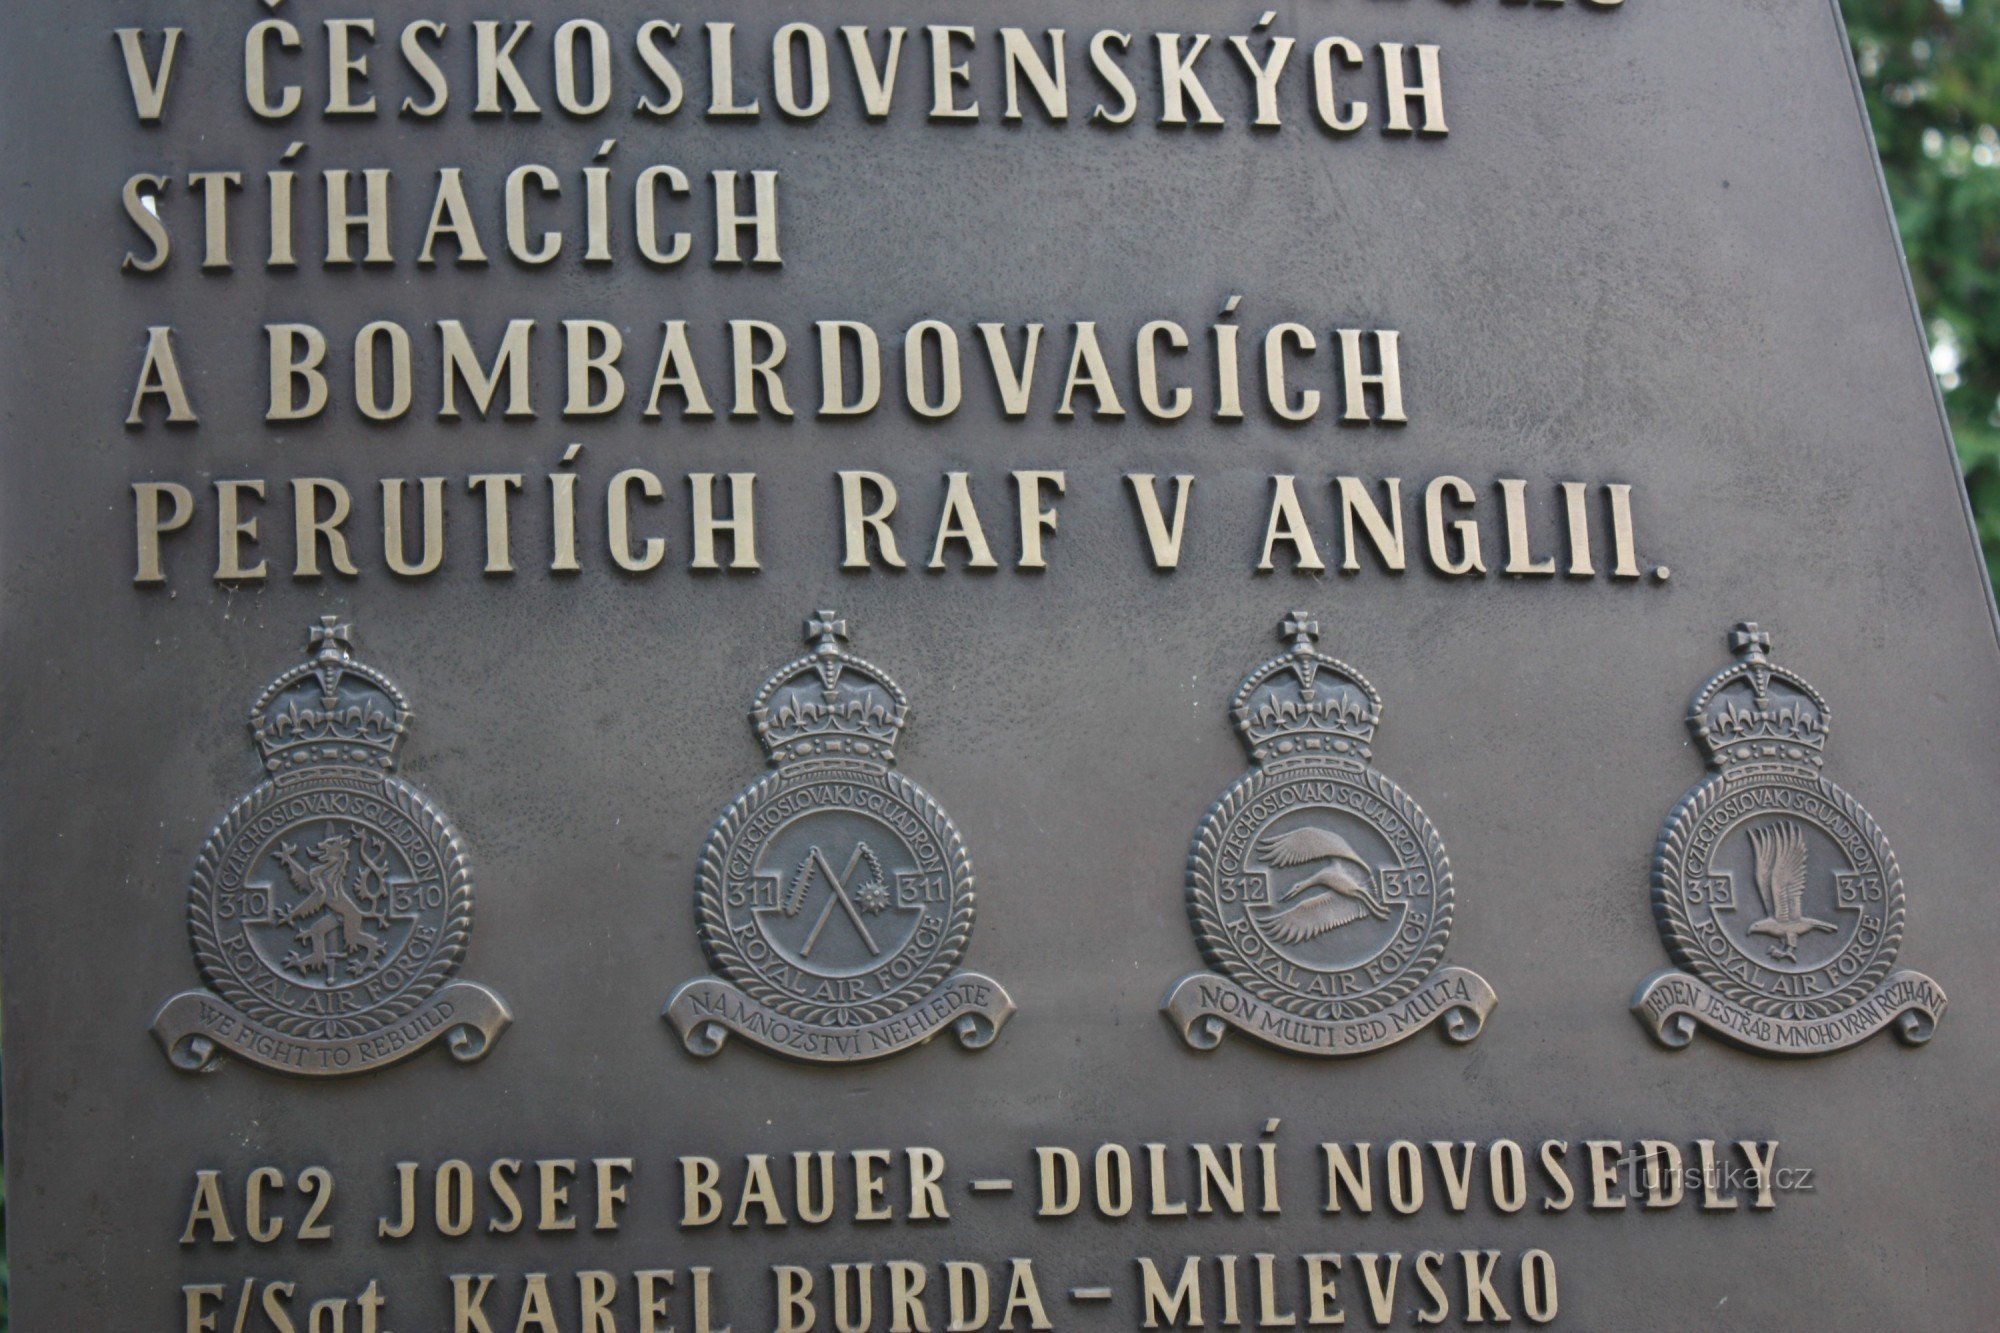 Emblèmes des escadrons tchécoslovaques 310, 311,312,313, XNUMX, XNUMX de la RAF